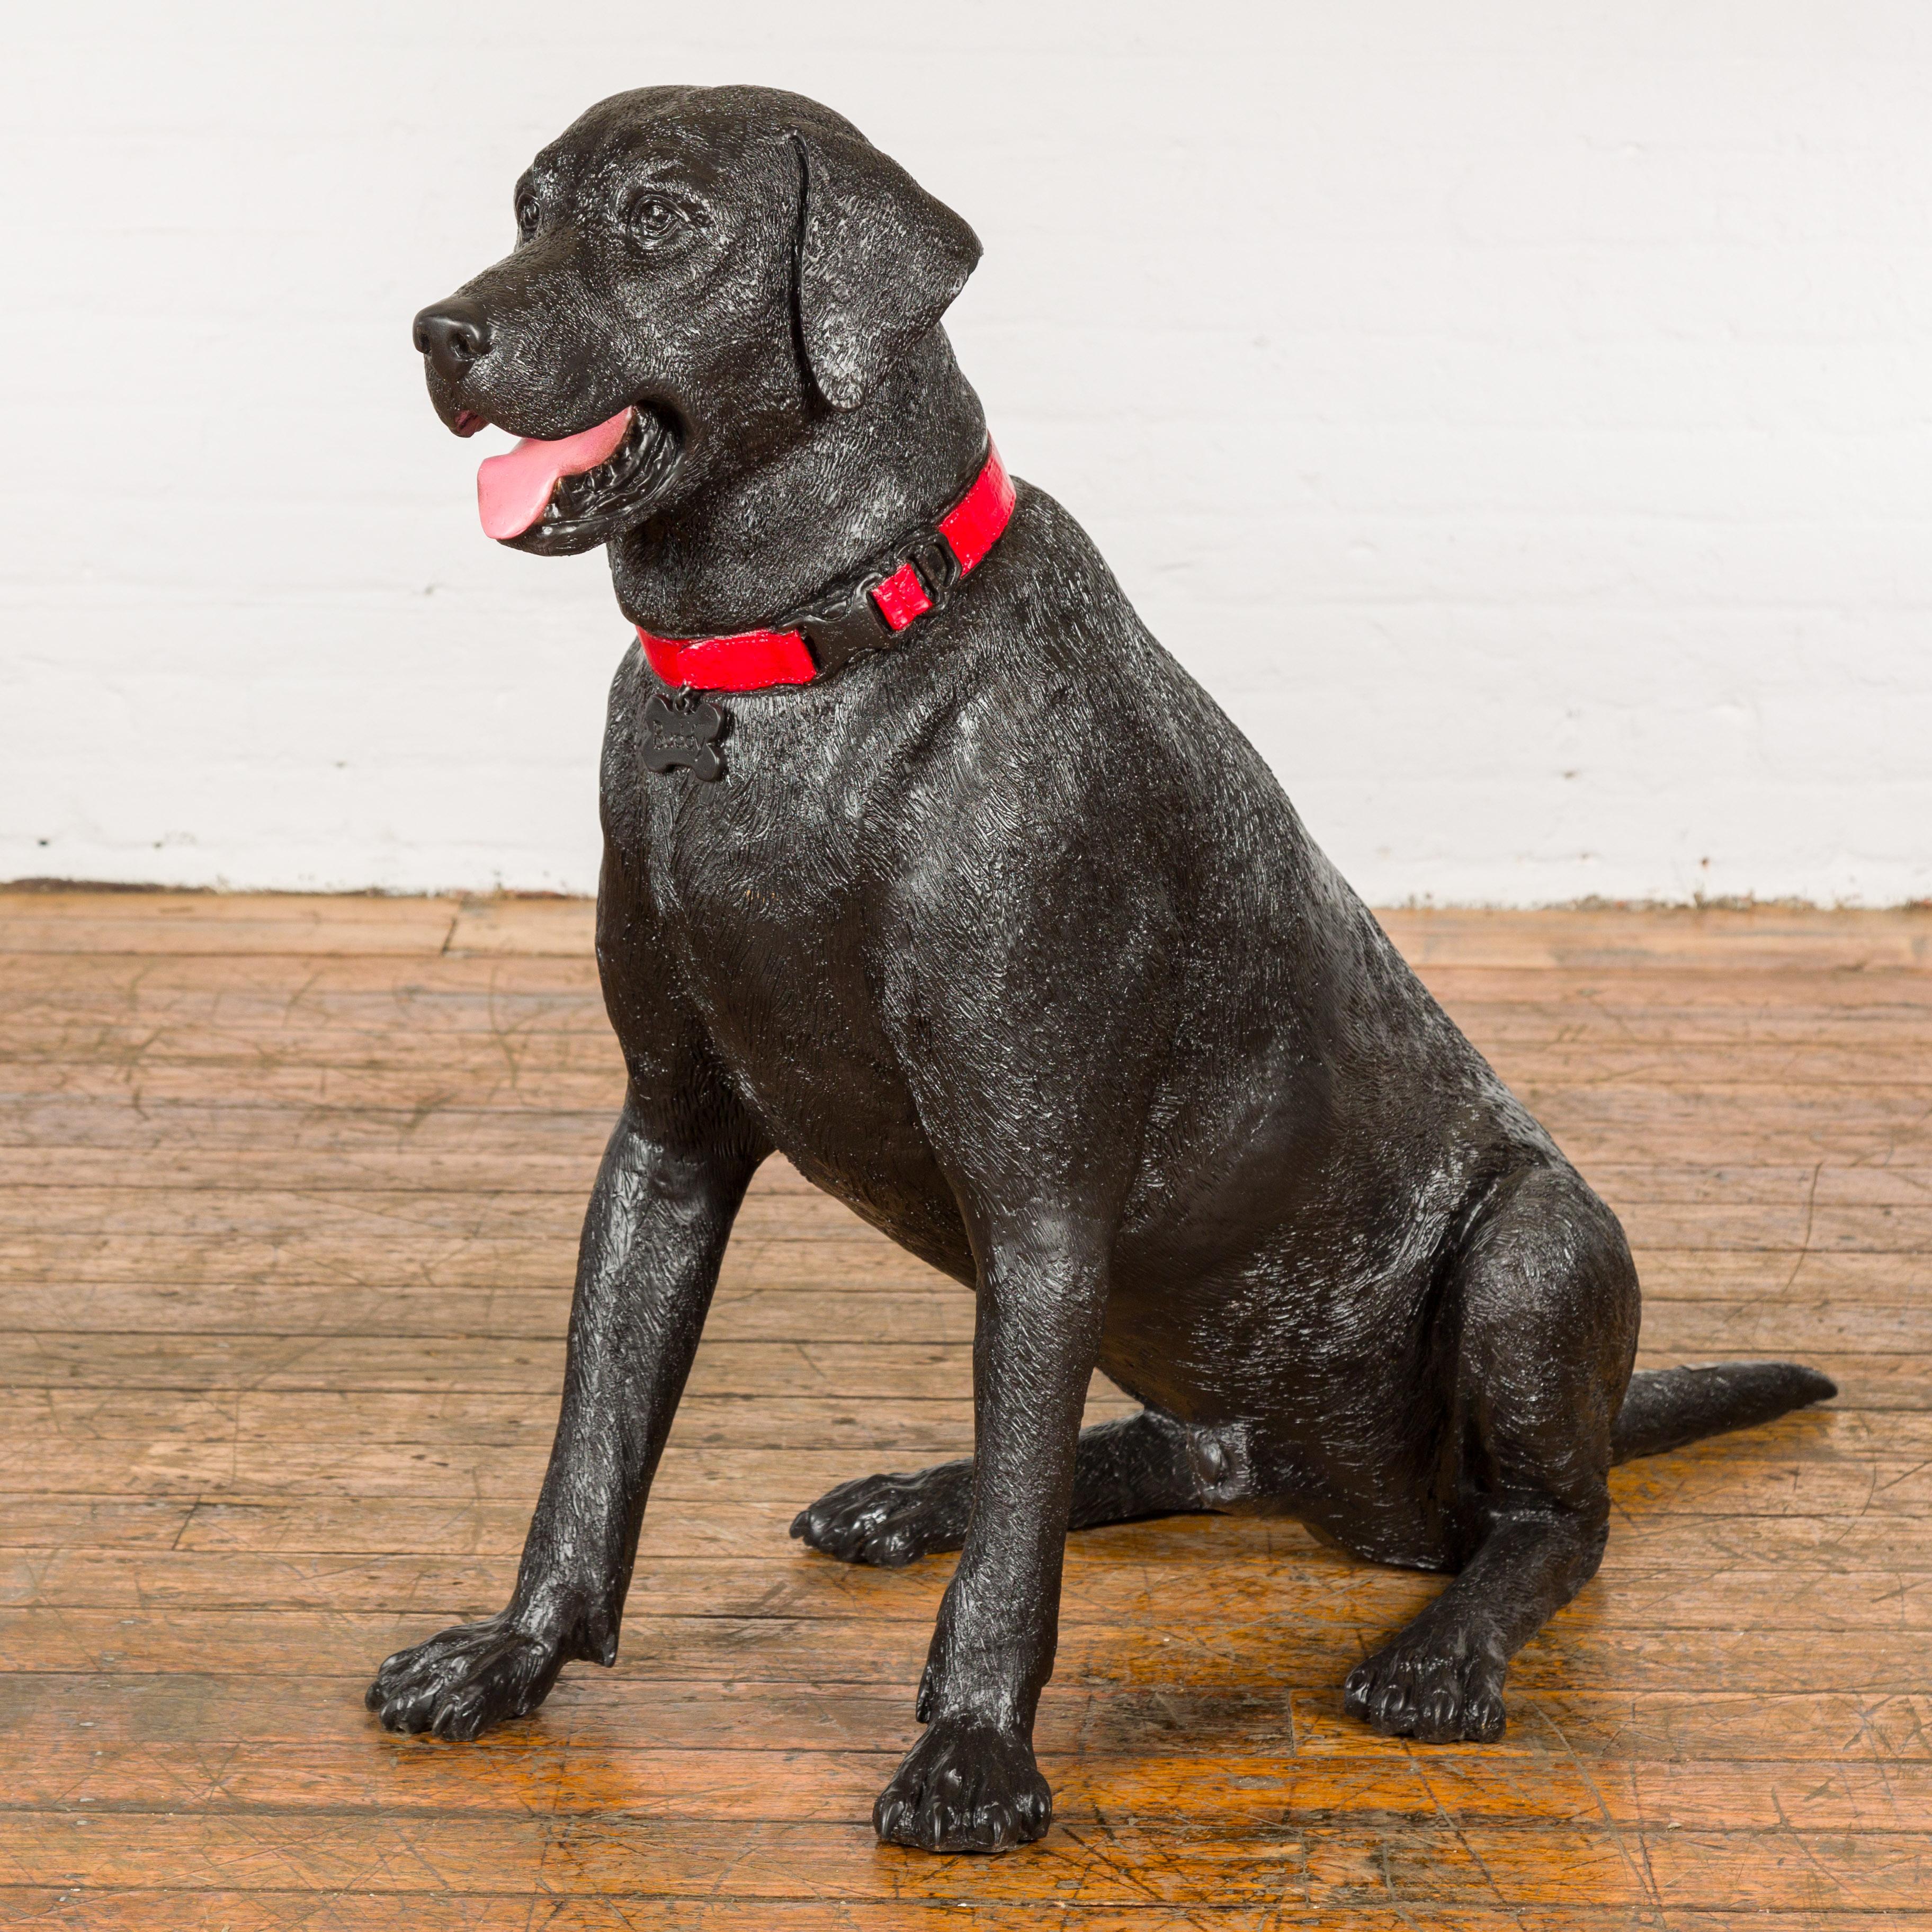 Buddy, sitzender Labrador Bronze Hundeskulptur mit rotem Halsband. Lernen Sie Buddy kennen, eine Labrador-Skulptur aus Bronze in limitierter Auflage, die mit ihrem lebensechten Charme und ihrer Gehorsamkeit die Herzen erobert. Buddy sitzt in